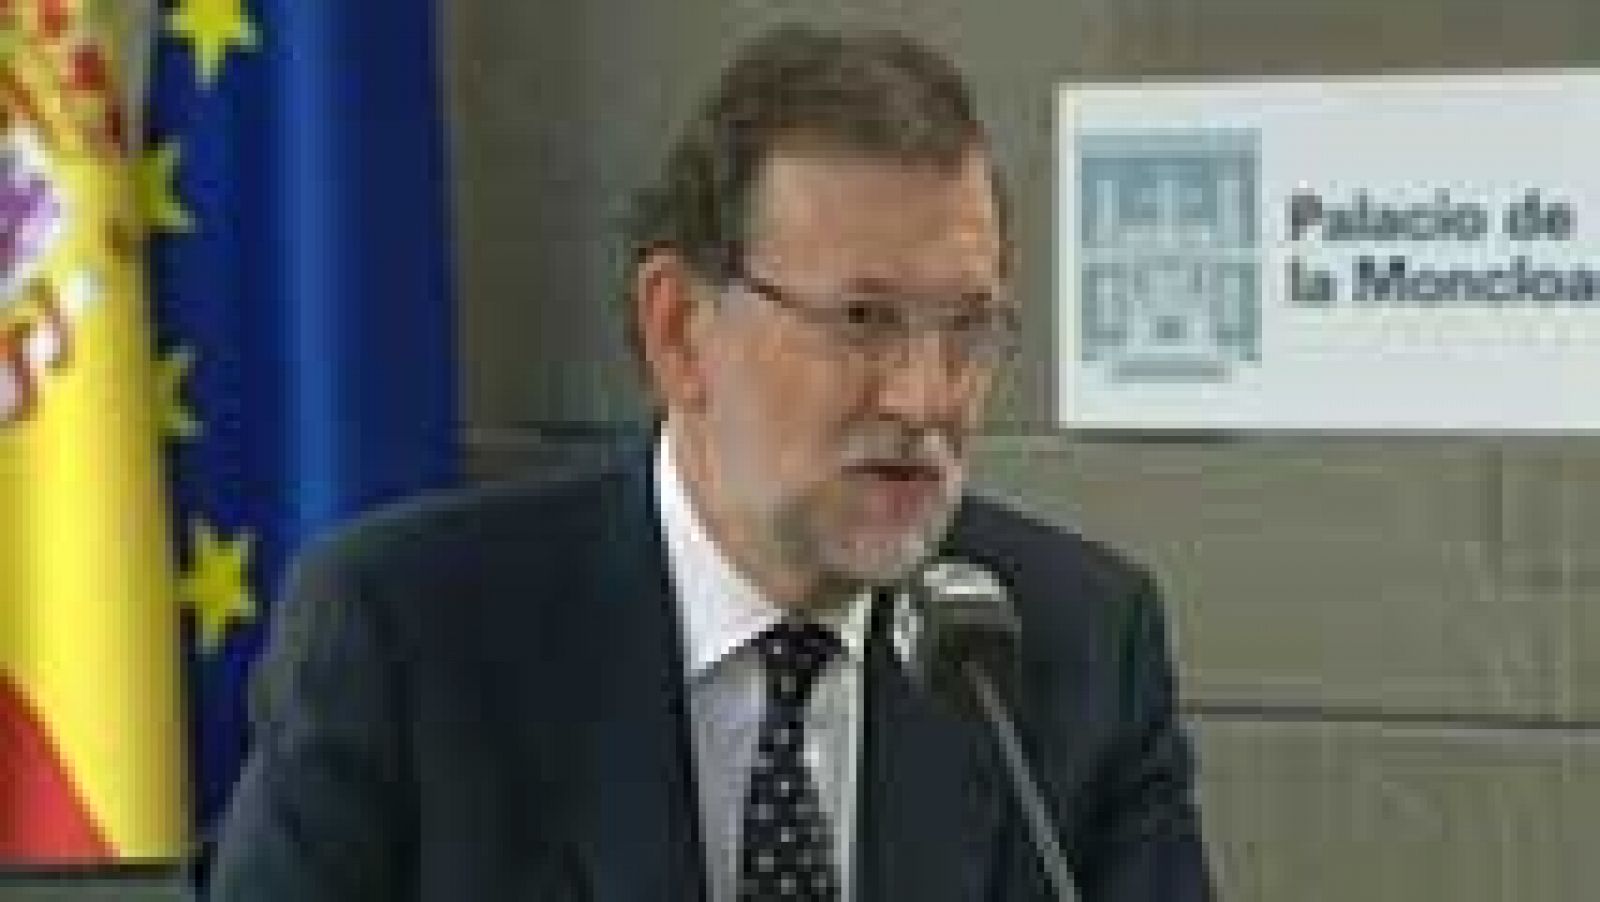 Elecciones catalanas - Mariano Rajoy: "Ni los escaños ni los votos sirven para legitimar una operación ilegal"